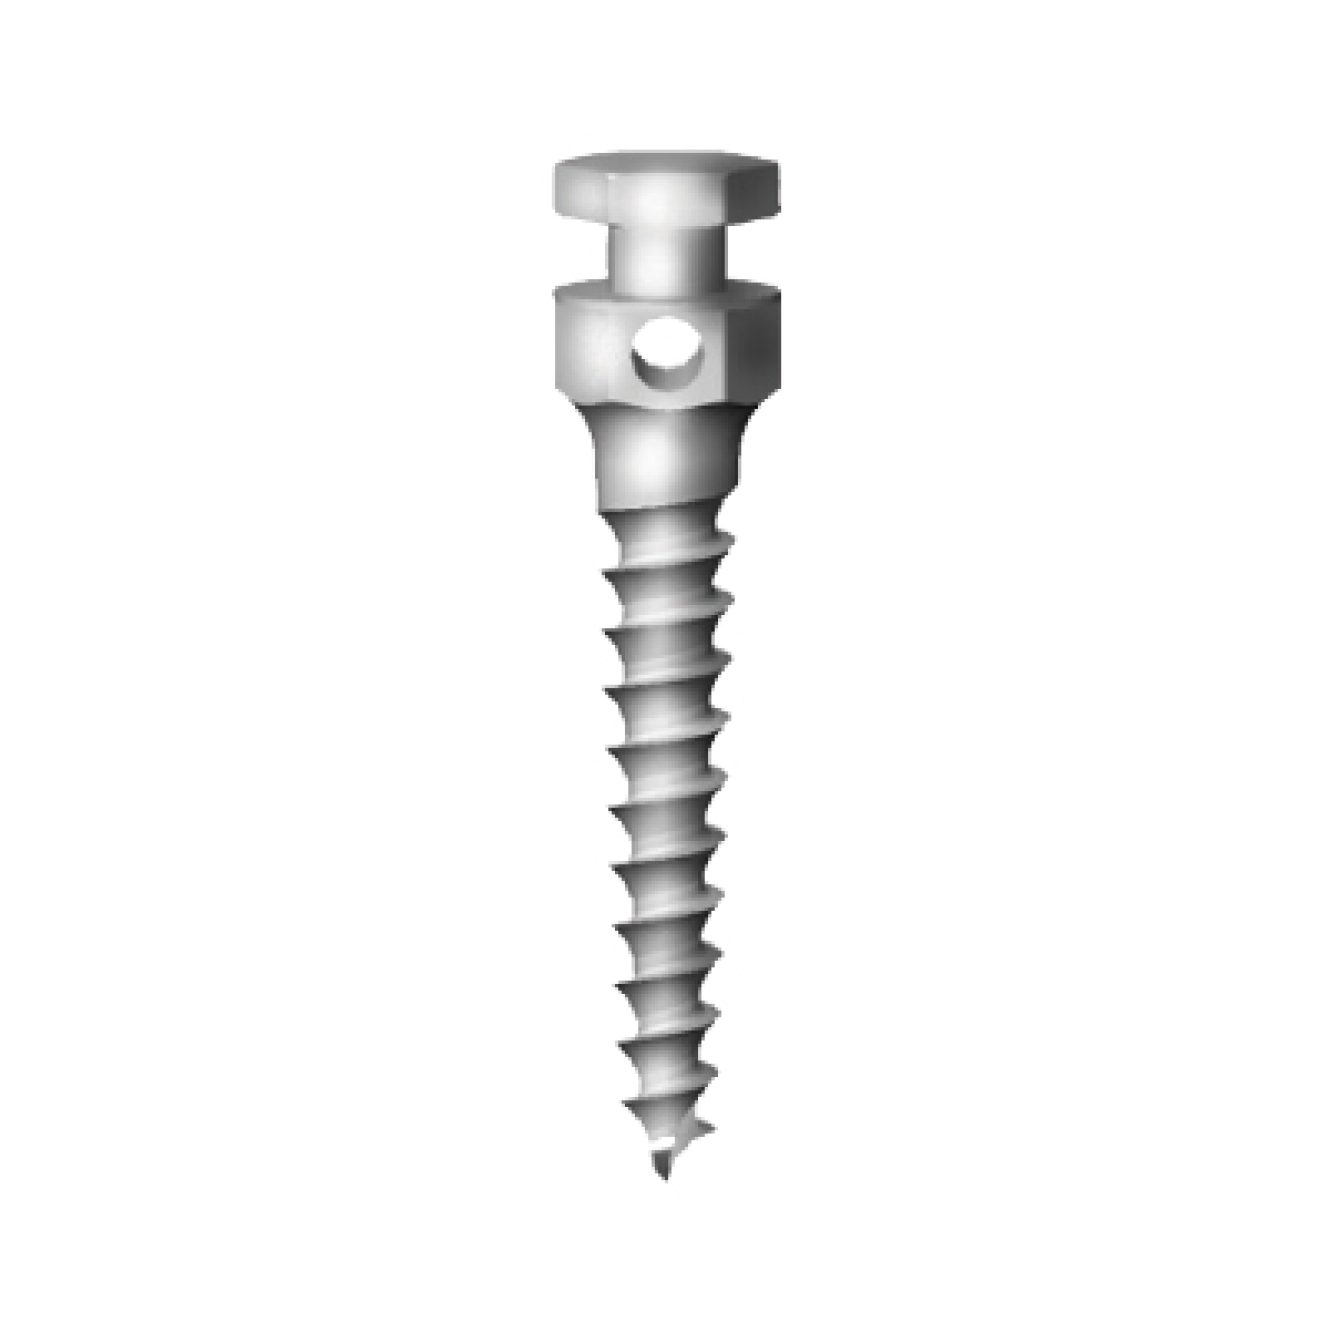 OS-L-14-008 Стоматологический ортодонтический винт для эластичной тяги и проволоки, диаметр 1.4 мм, длина 8 мм, Mr.Curette Tech, Южная Корея